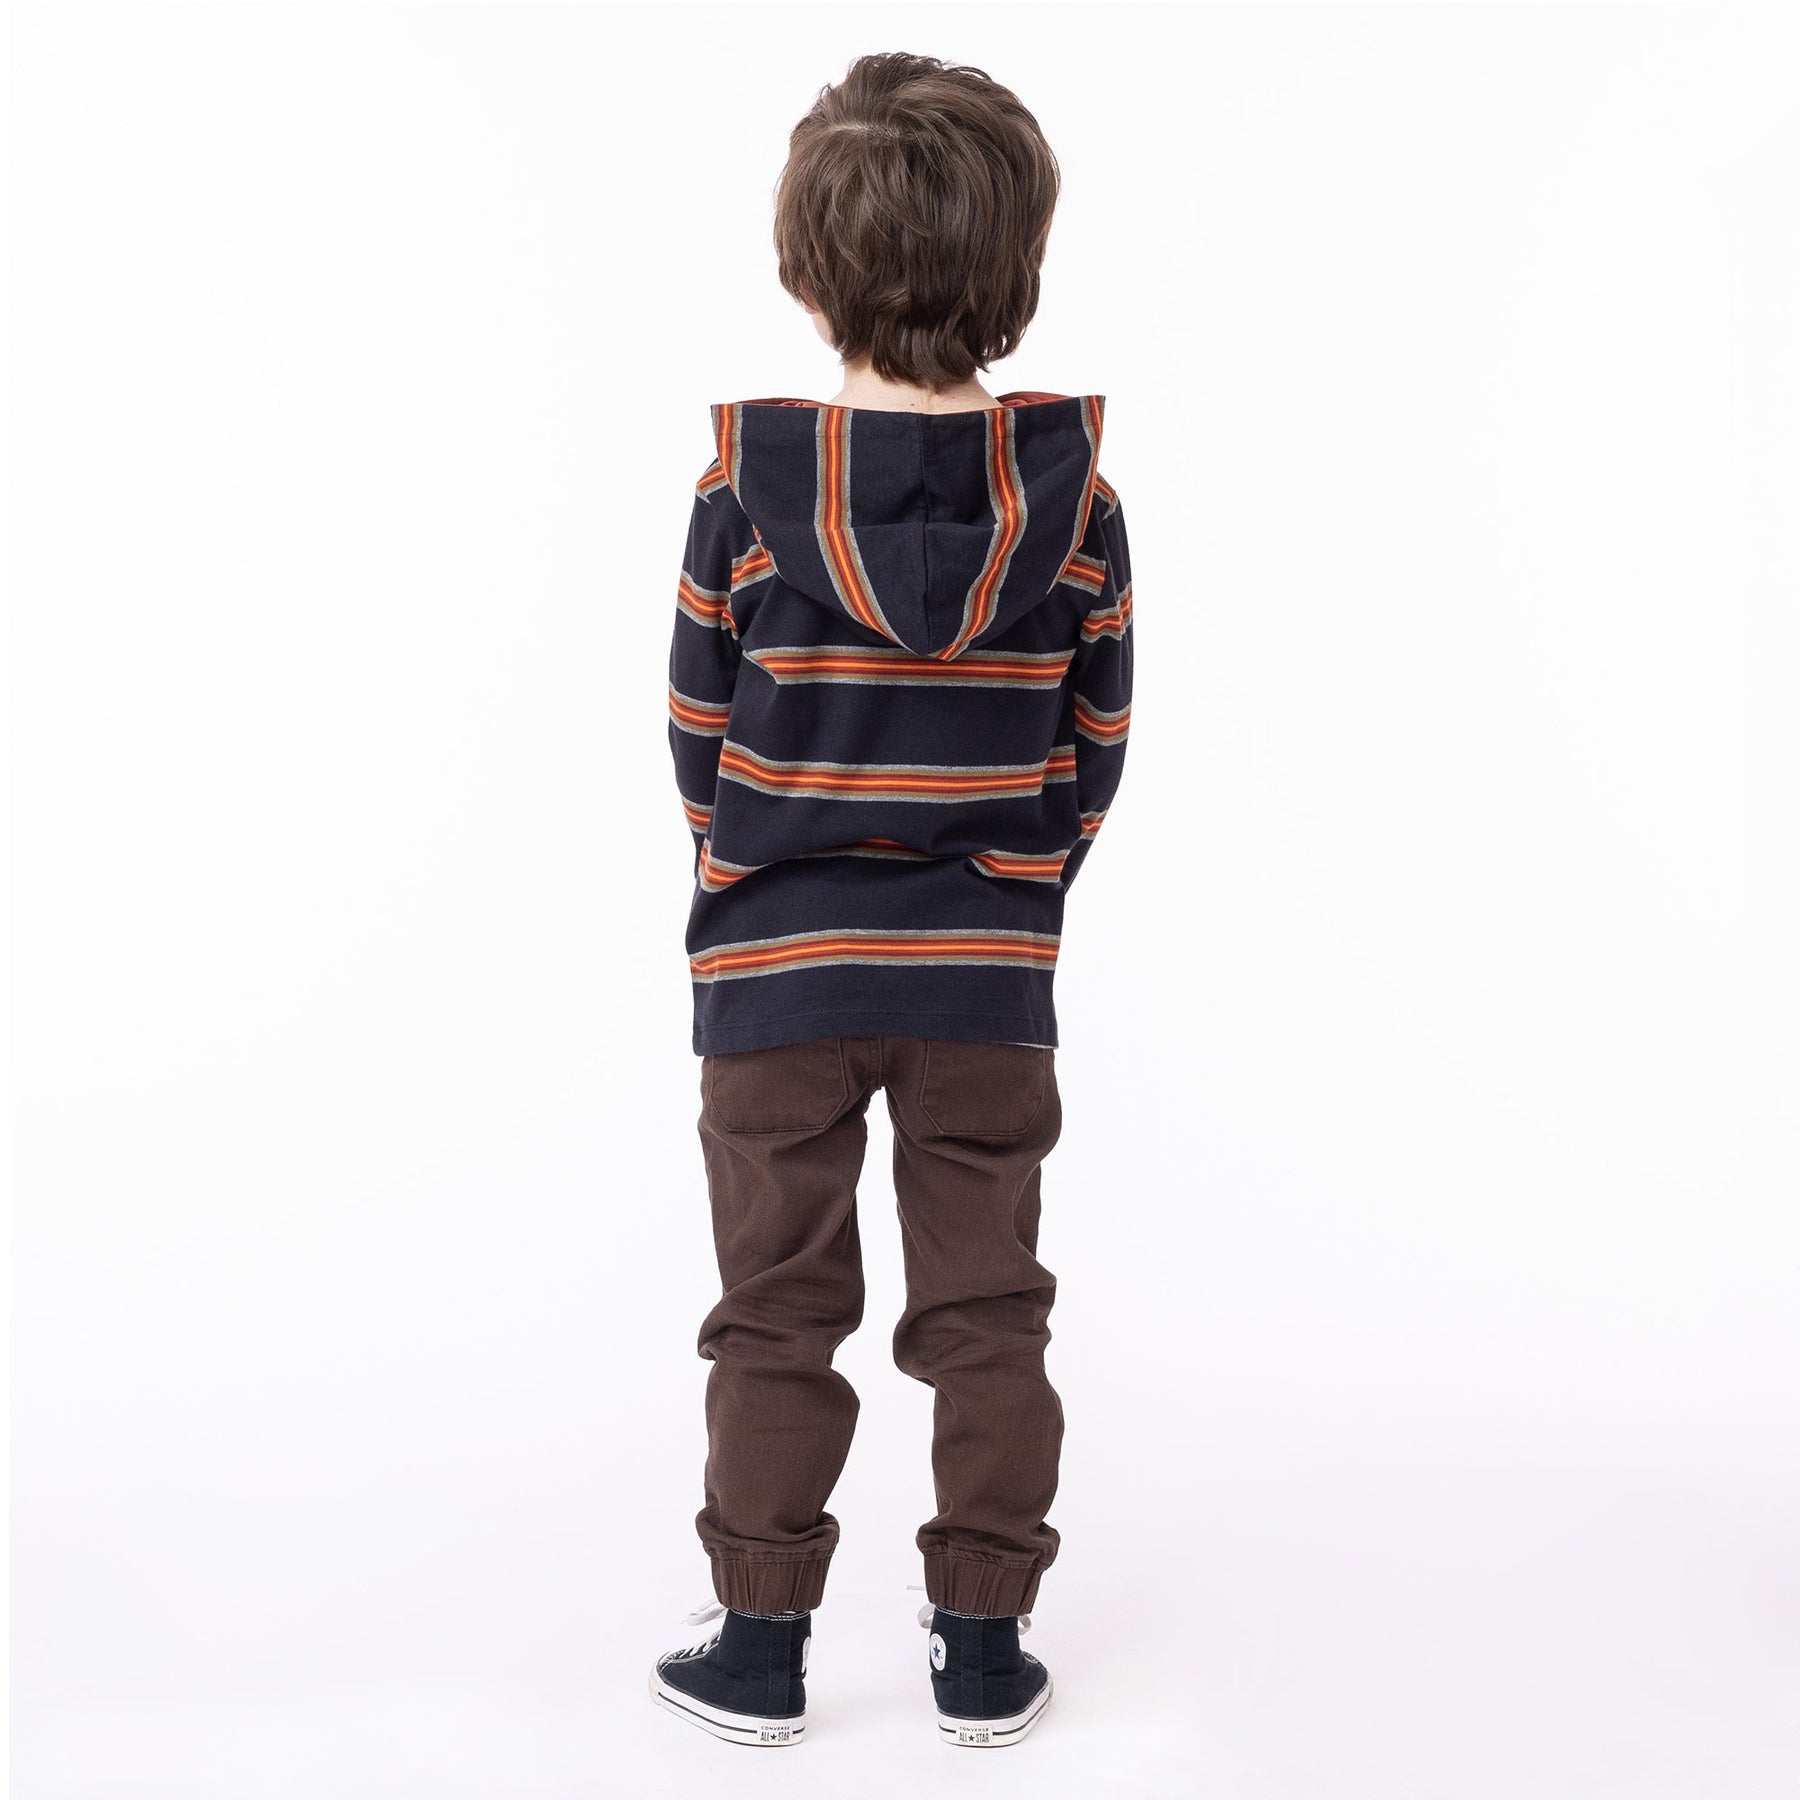 Chandail manches longues à capuchon pour enfant garçon par Nanö | F2303-06 Charbon | Boutique Flos, vêtements mode pour bébés et enfants